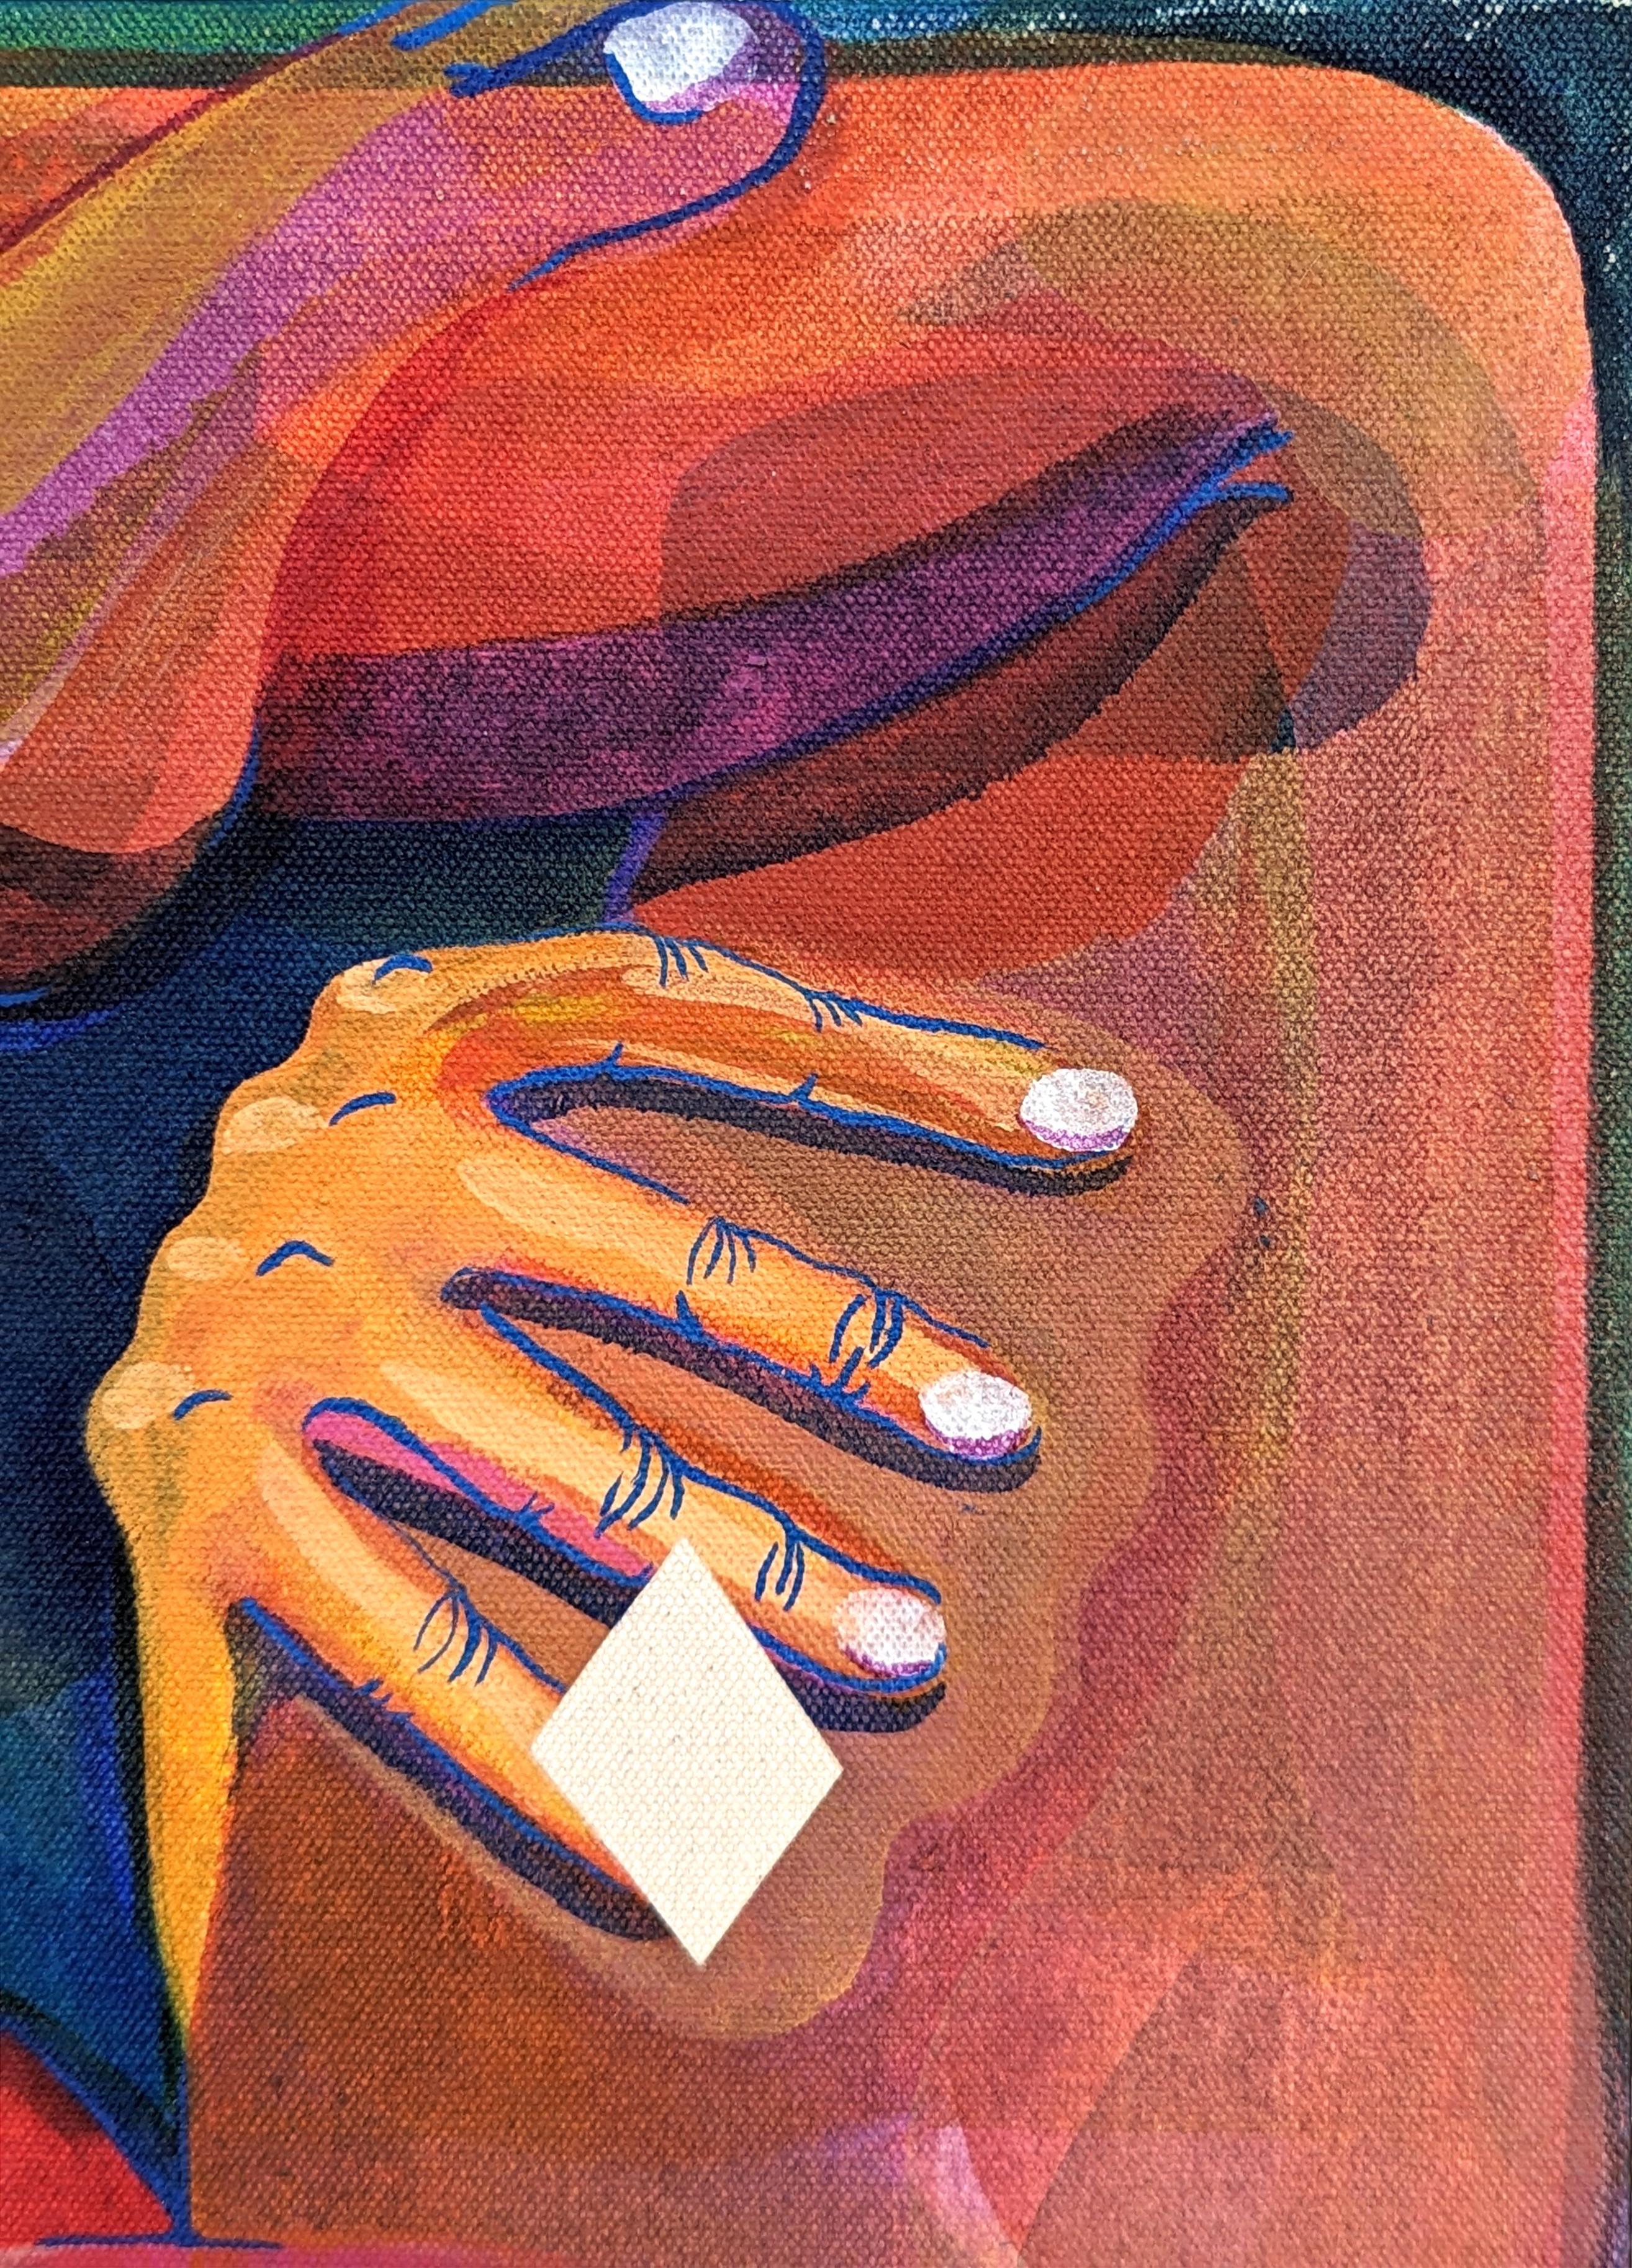 Peinture abstraite contemporaine aux tons orange et bleu de l'artiste Cecilia Beaven, basée à Chicago. L'œuvre présente une figure contournée inspirée d'un alligator. Cecilia Beaven s'inspire de son enfance à Mexico et de son introspection